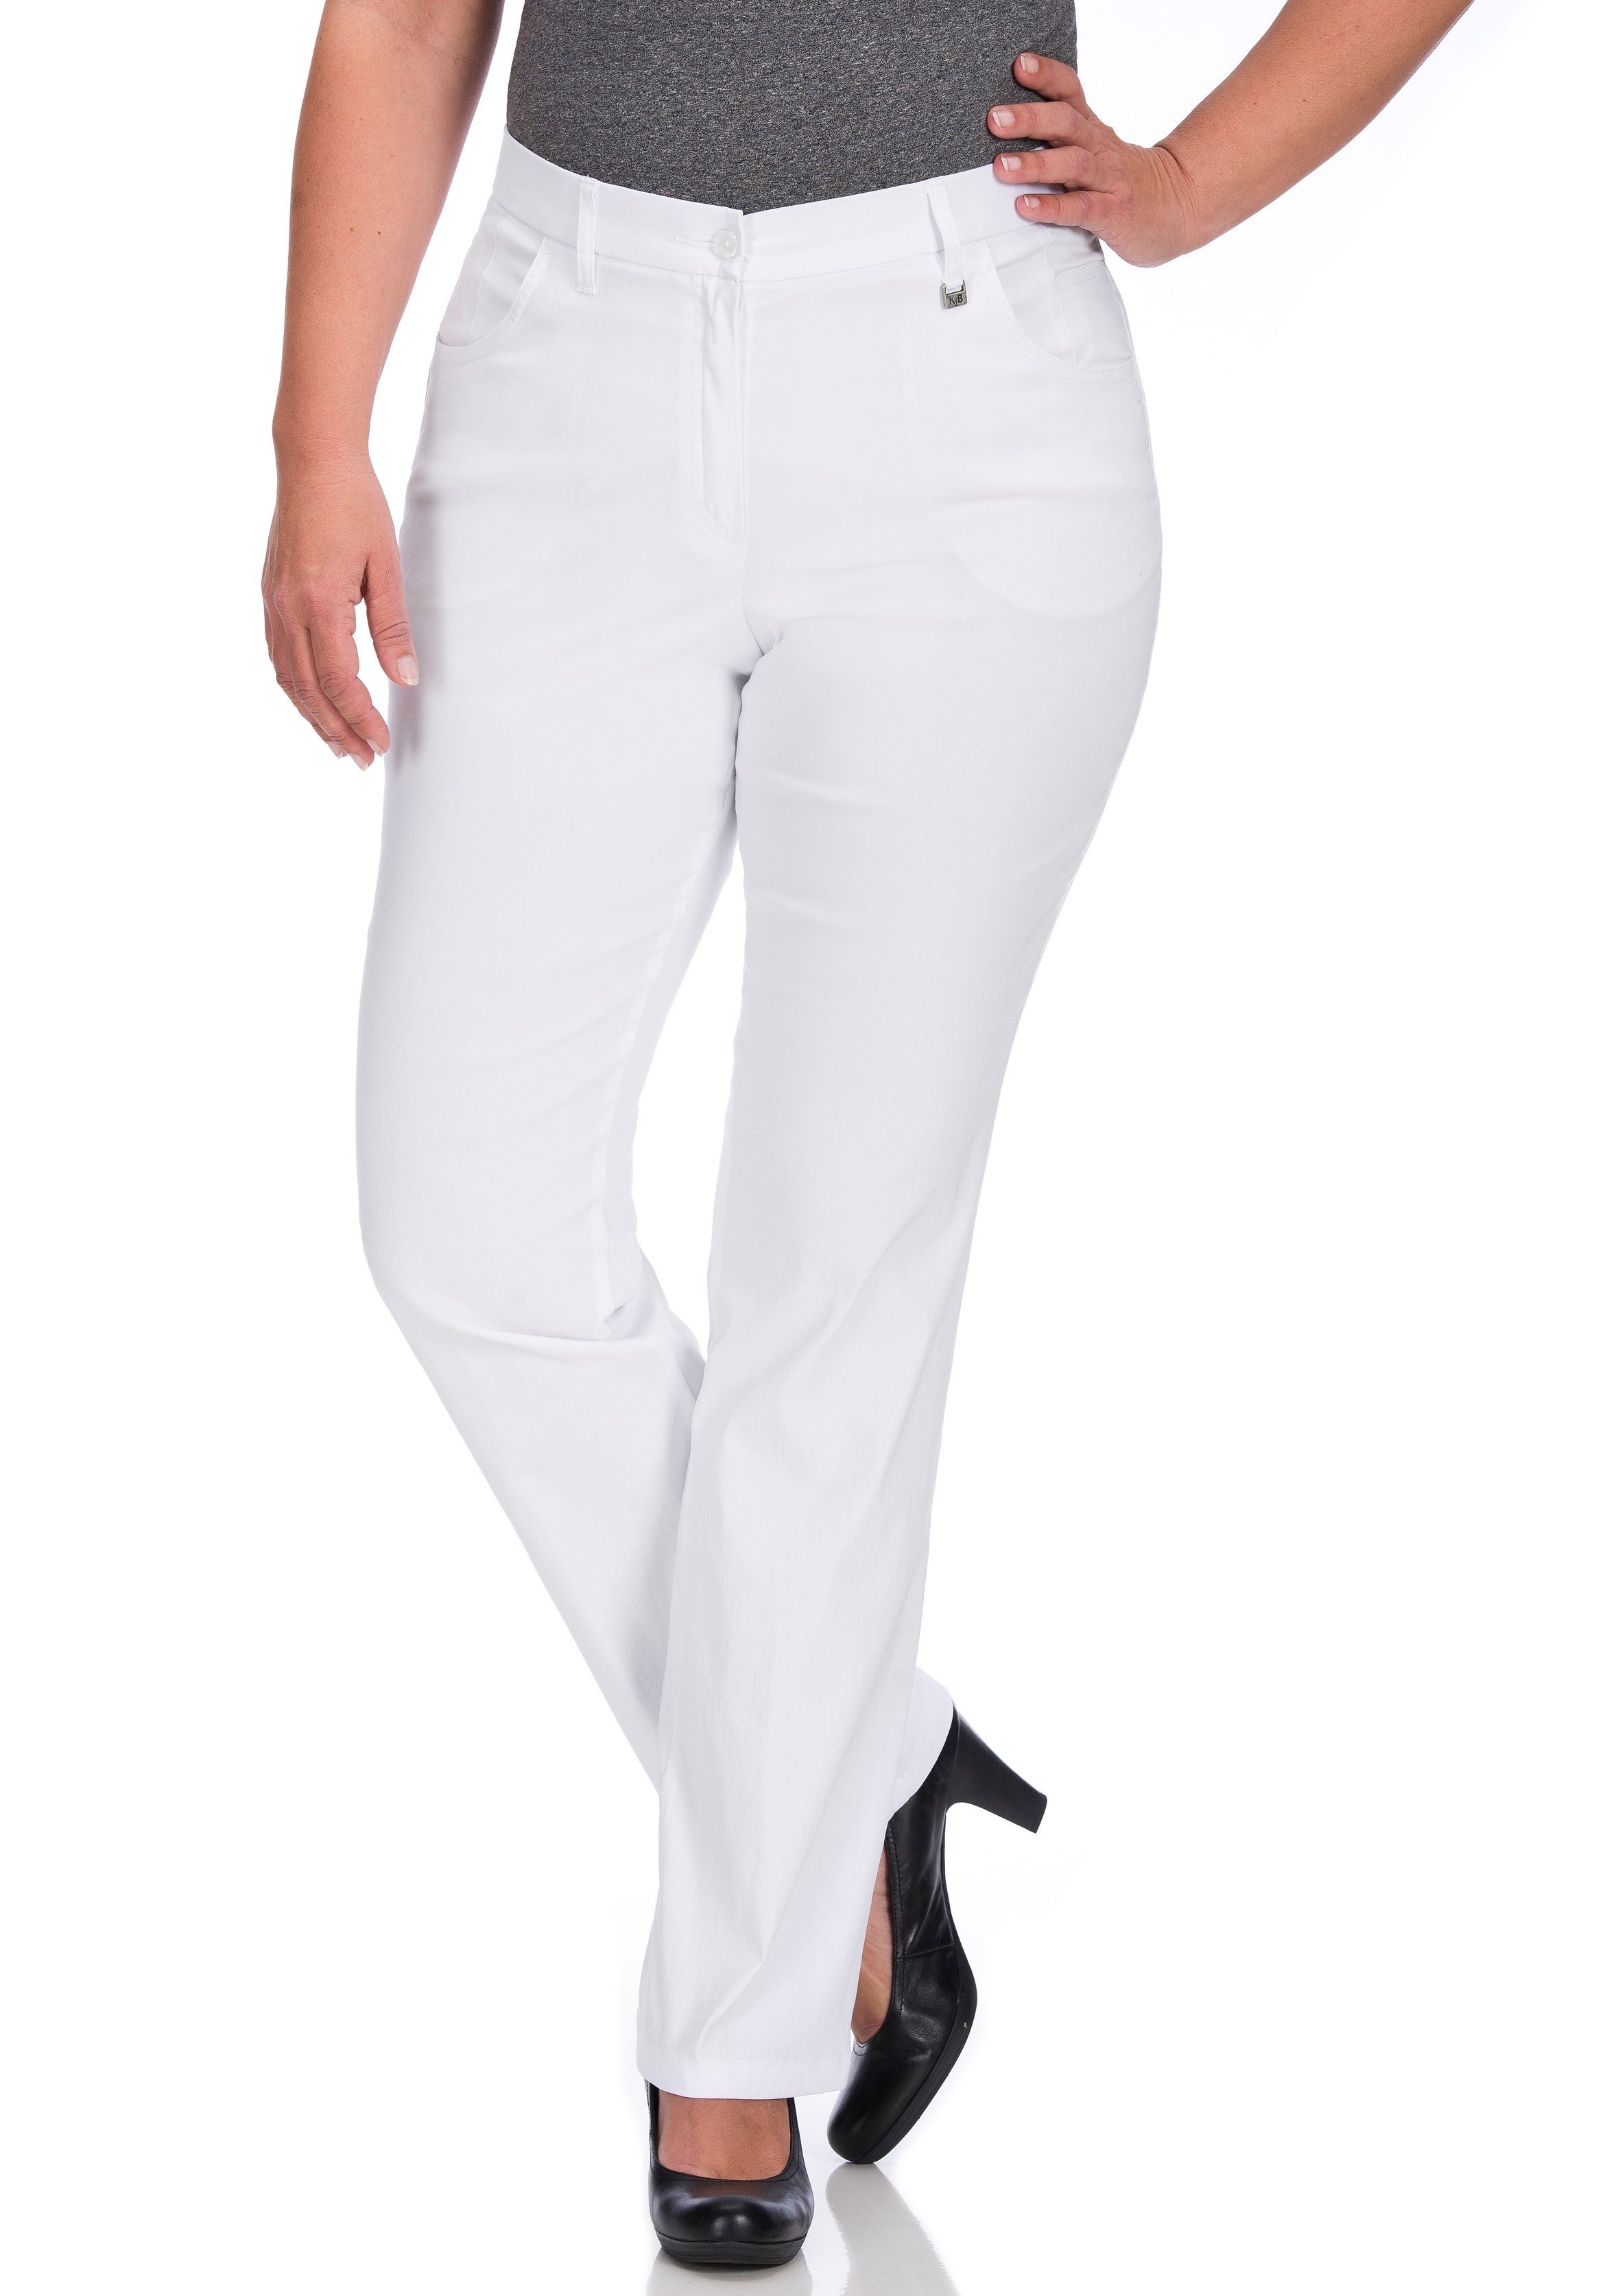 KjBRAND 5-Pocket-Hose Betty Bengaline in bequemer Form weiß